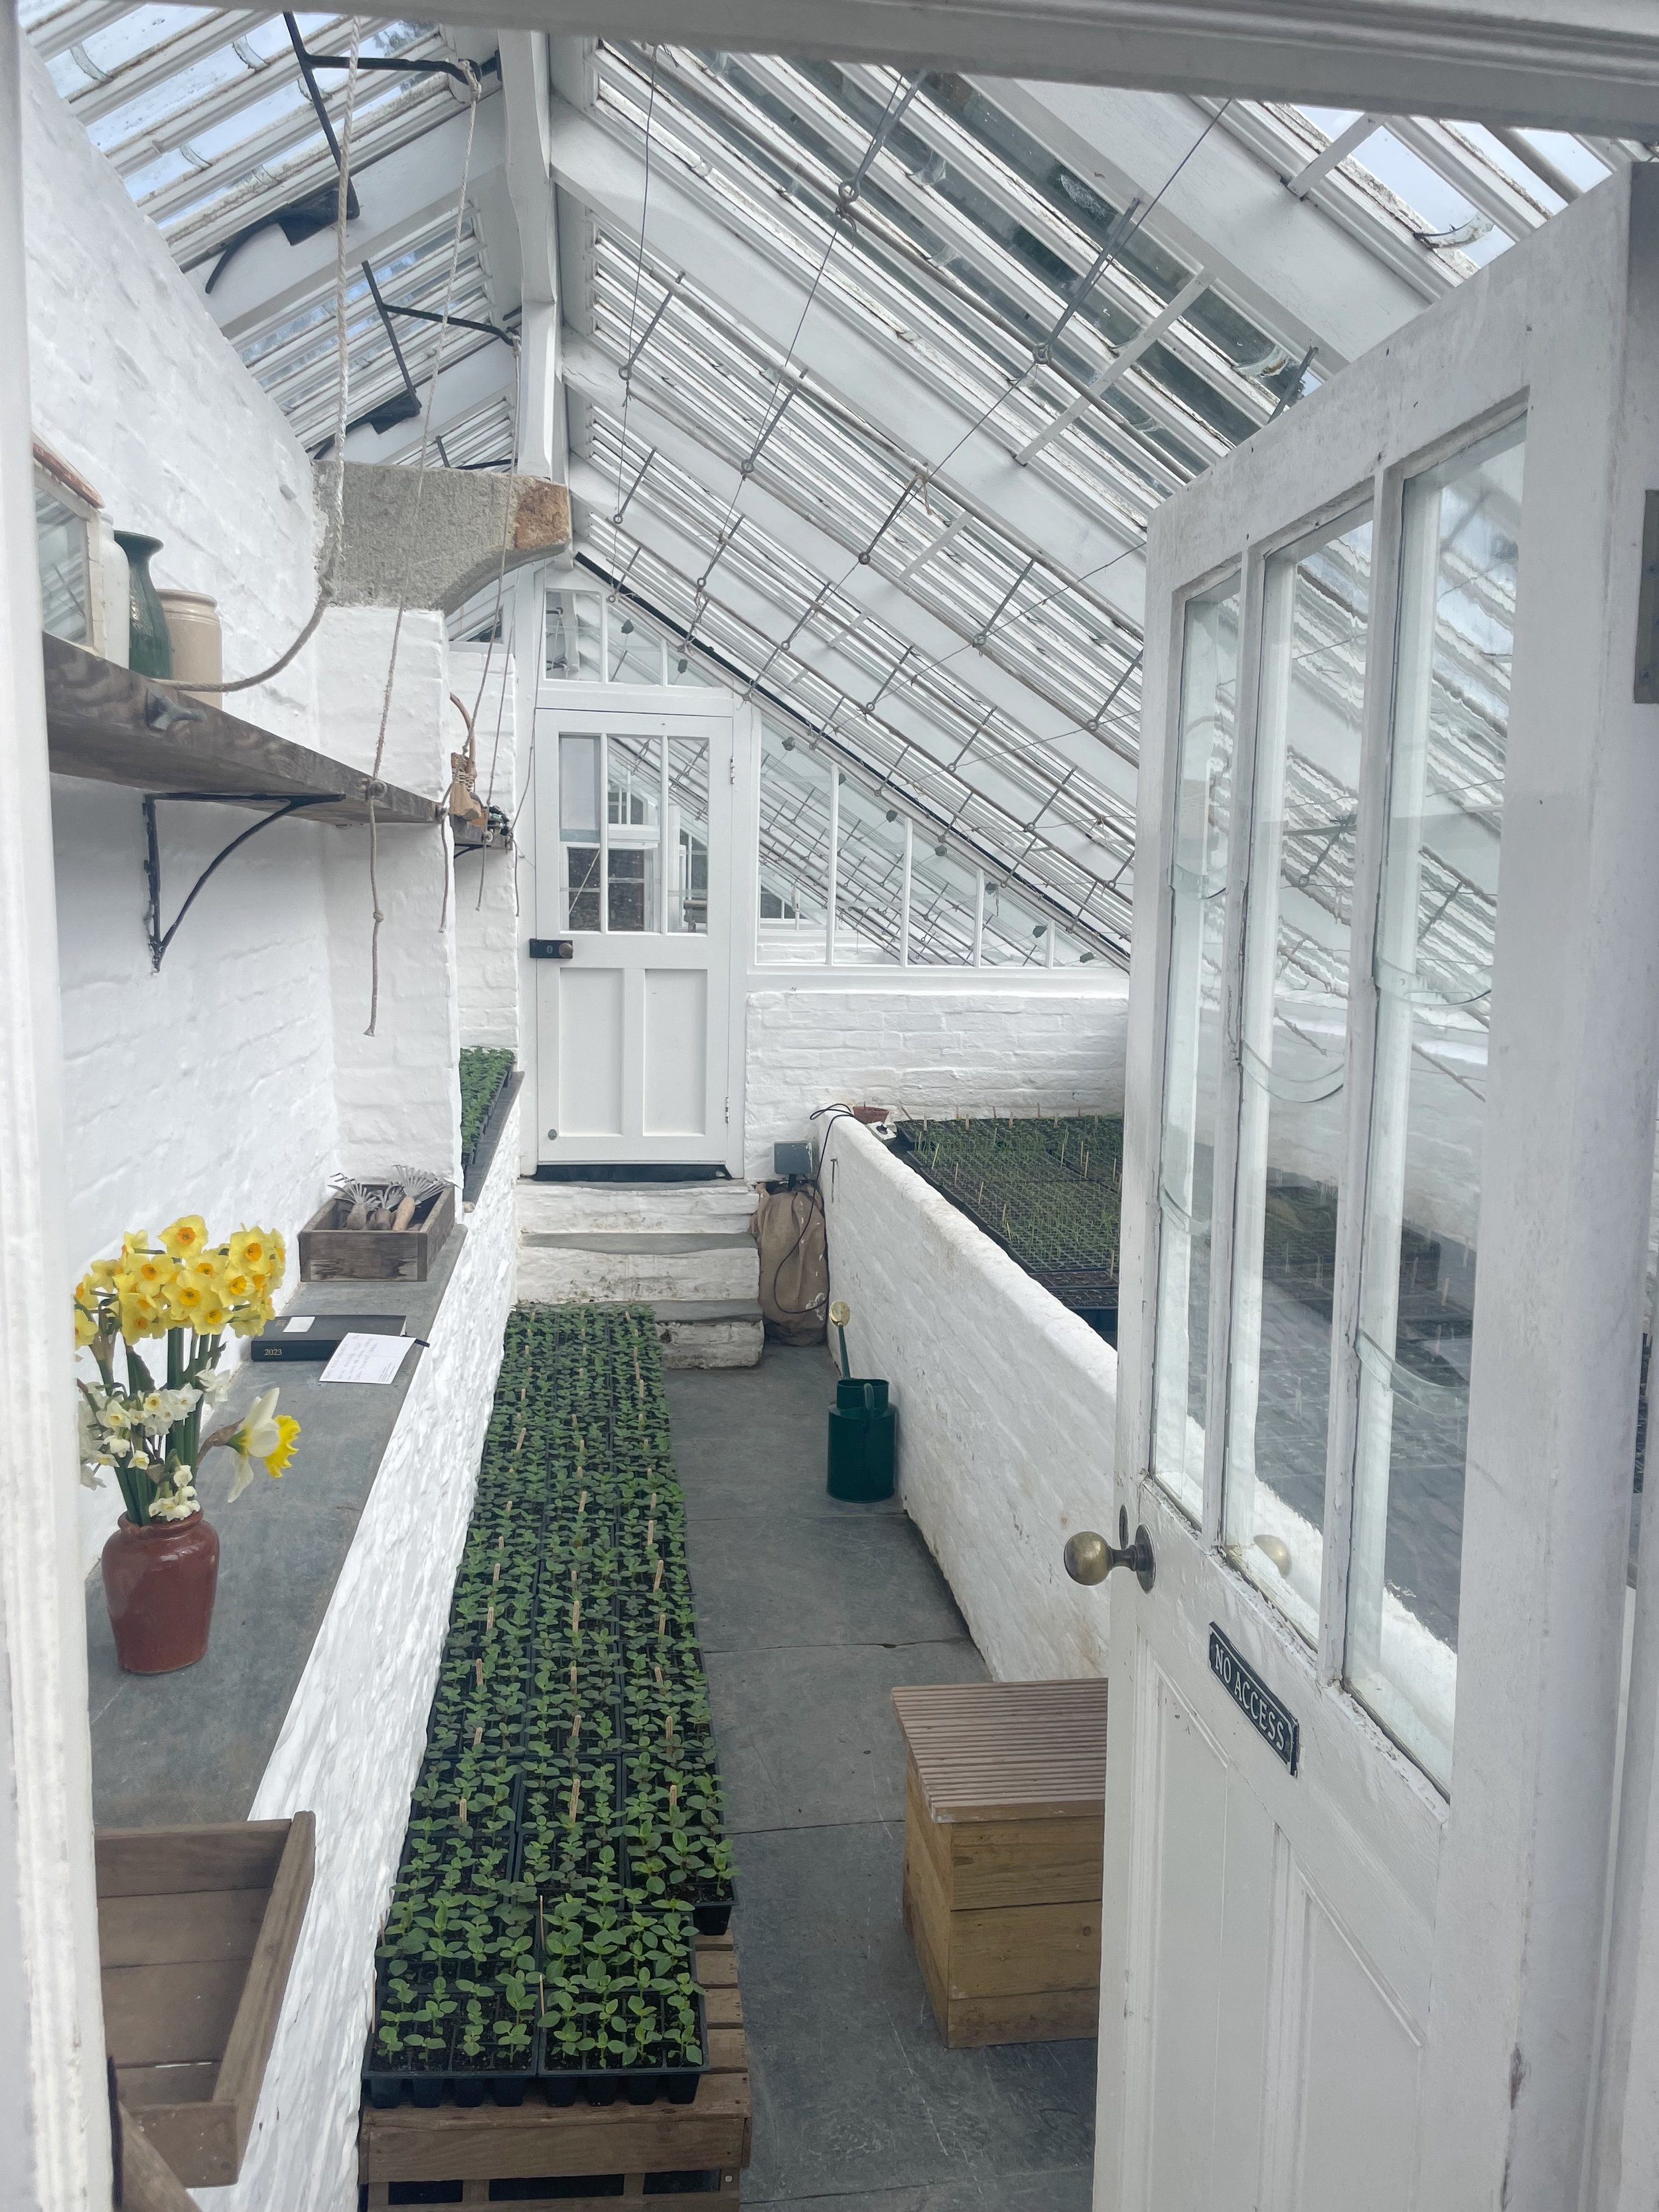 Heligan garden greenhouse